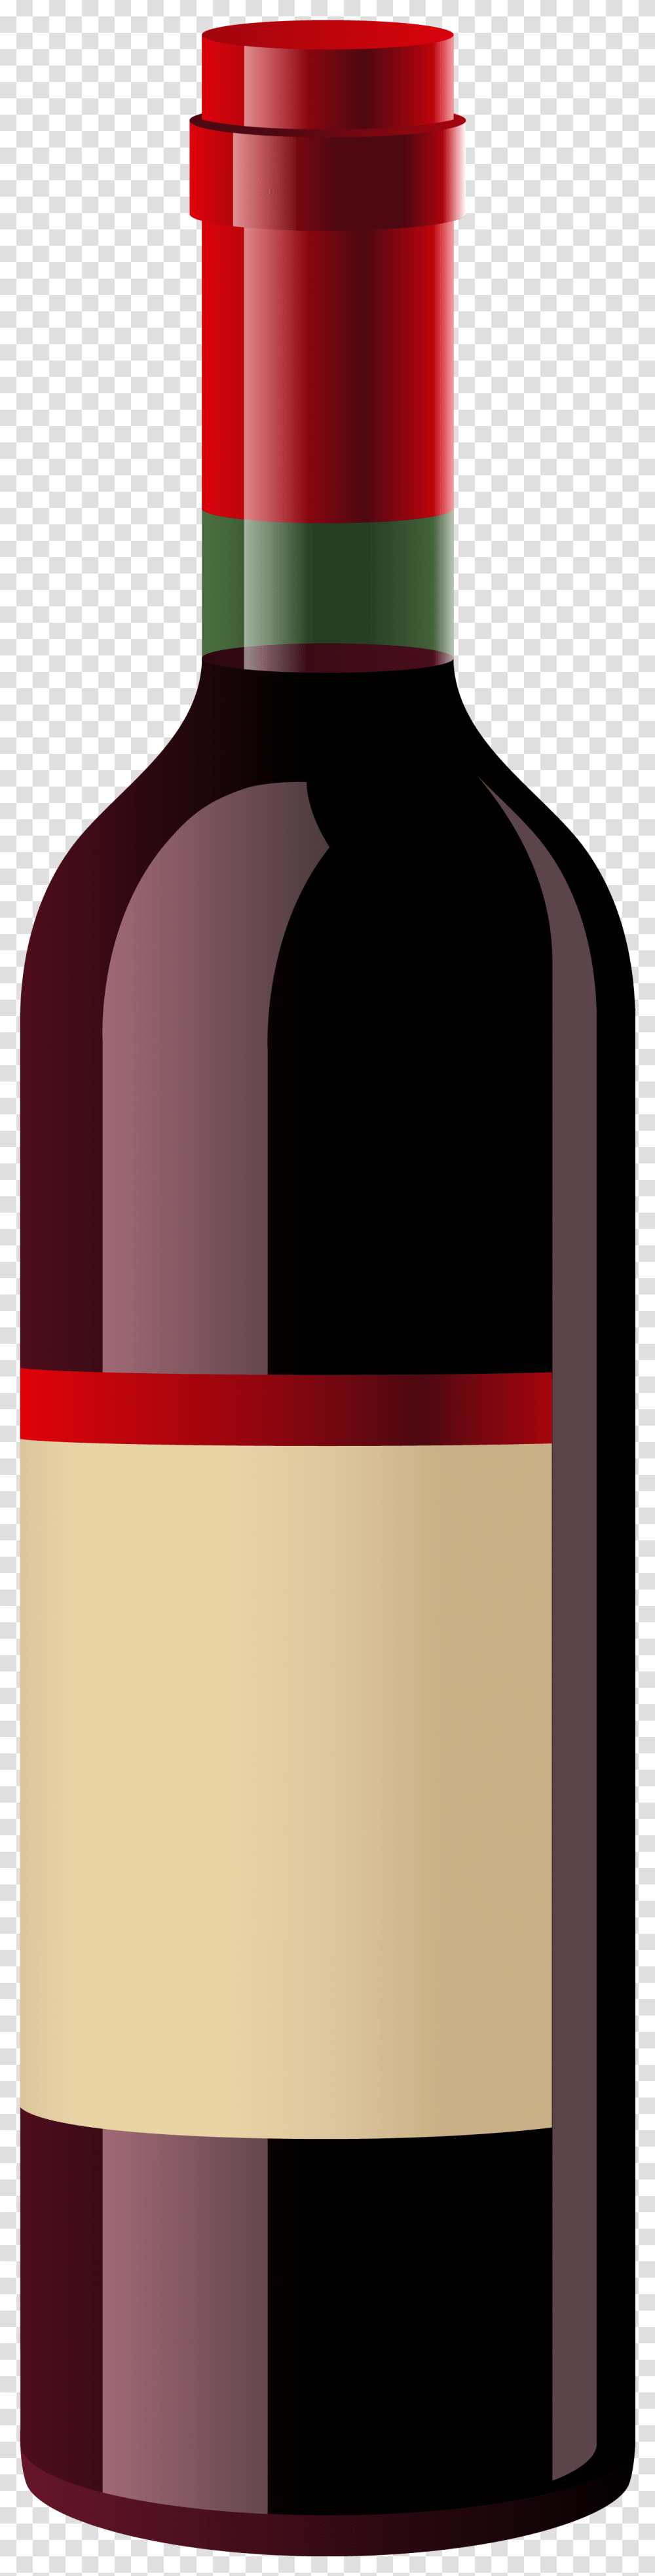 Red Wine Bottle Clipart Wine Bottle, Alcohol, Beverage, Drink Transparent Png